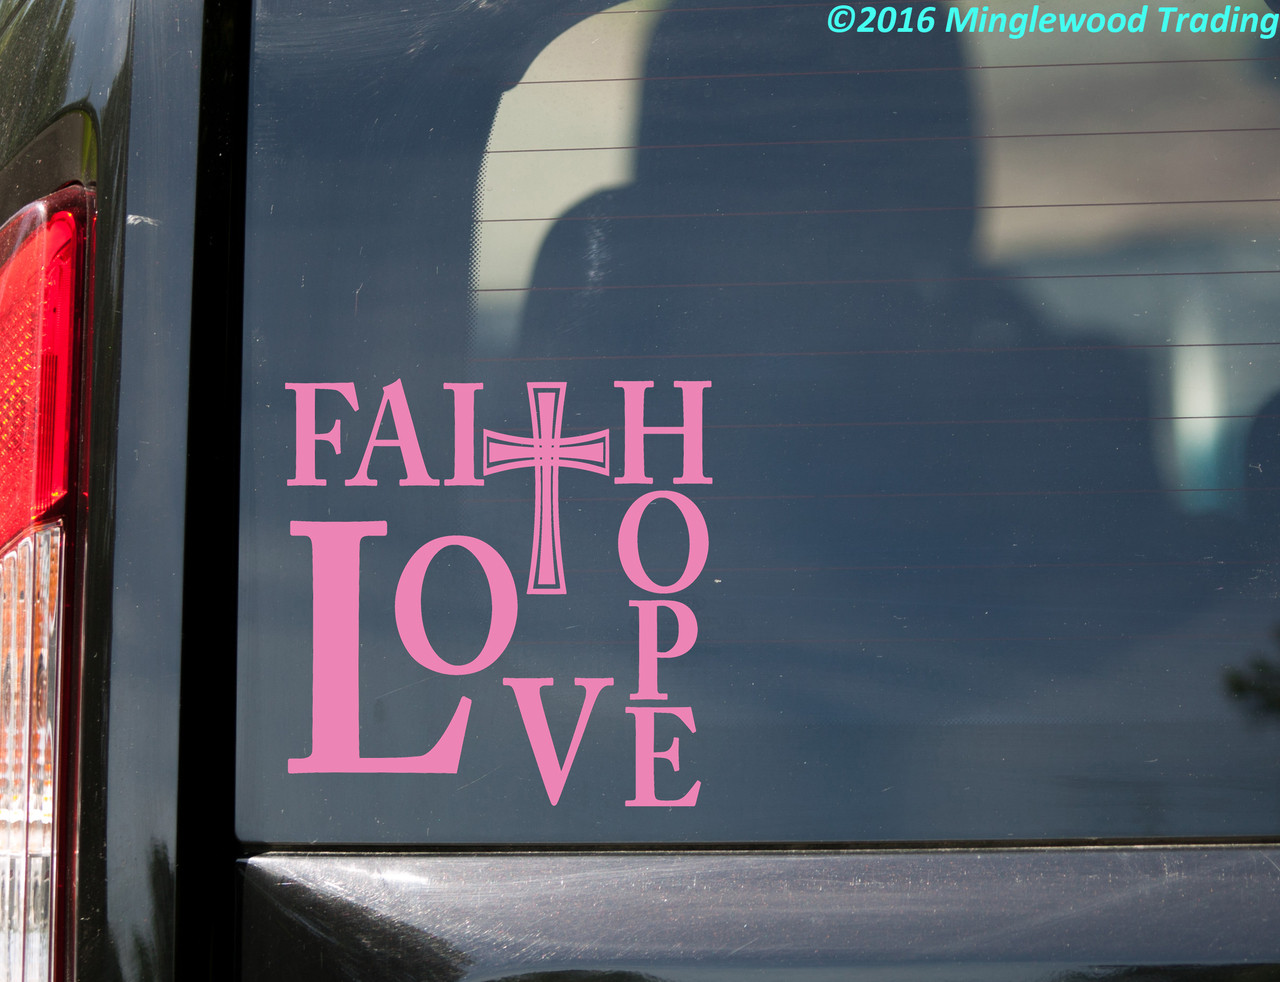 FAITH HOPE LOVE 8" x 8" Vinyl Decal Sticker - Cross